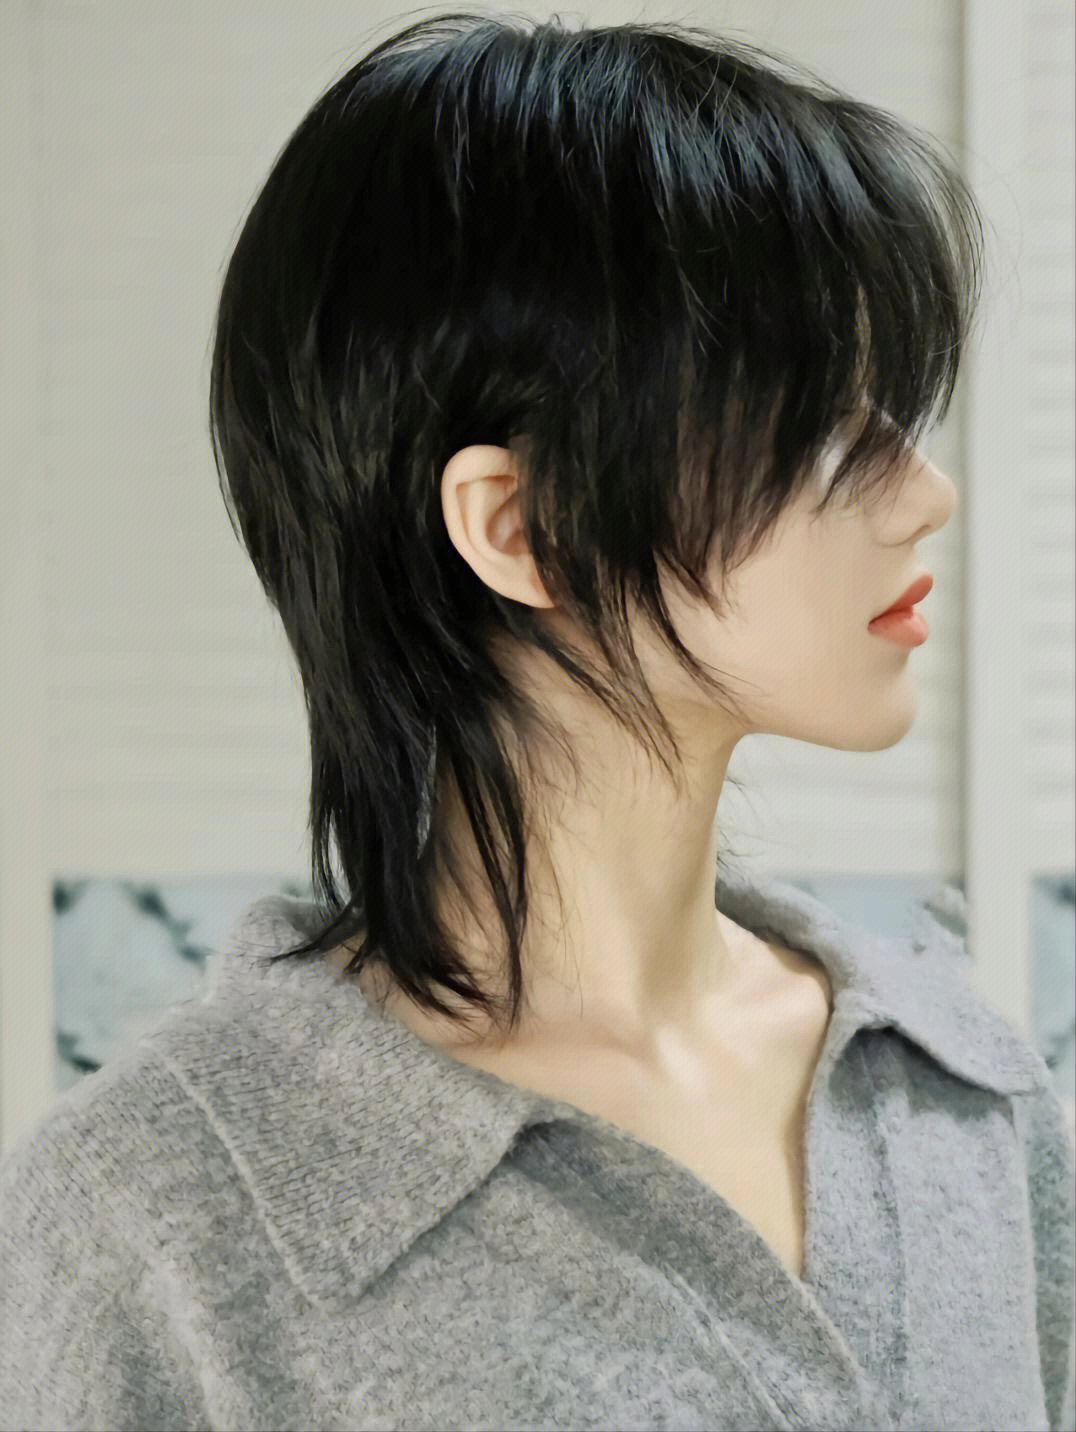 记得收藏下次剪头发拿给你的发型师看正面:刘海长度建议3